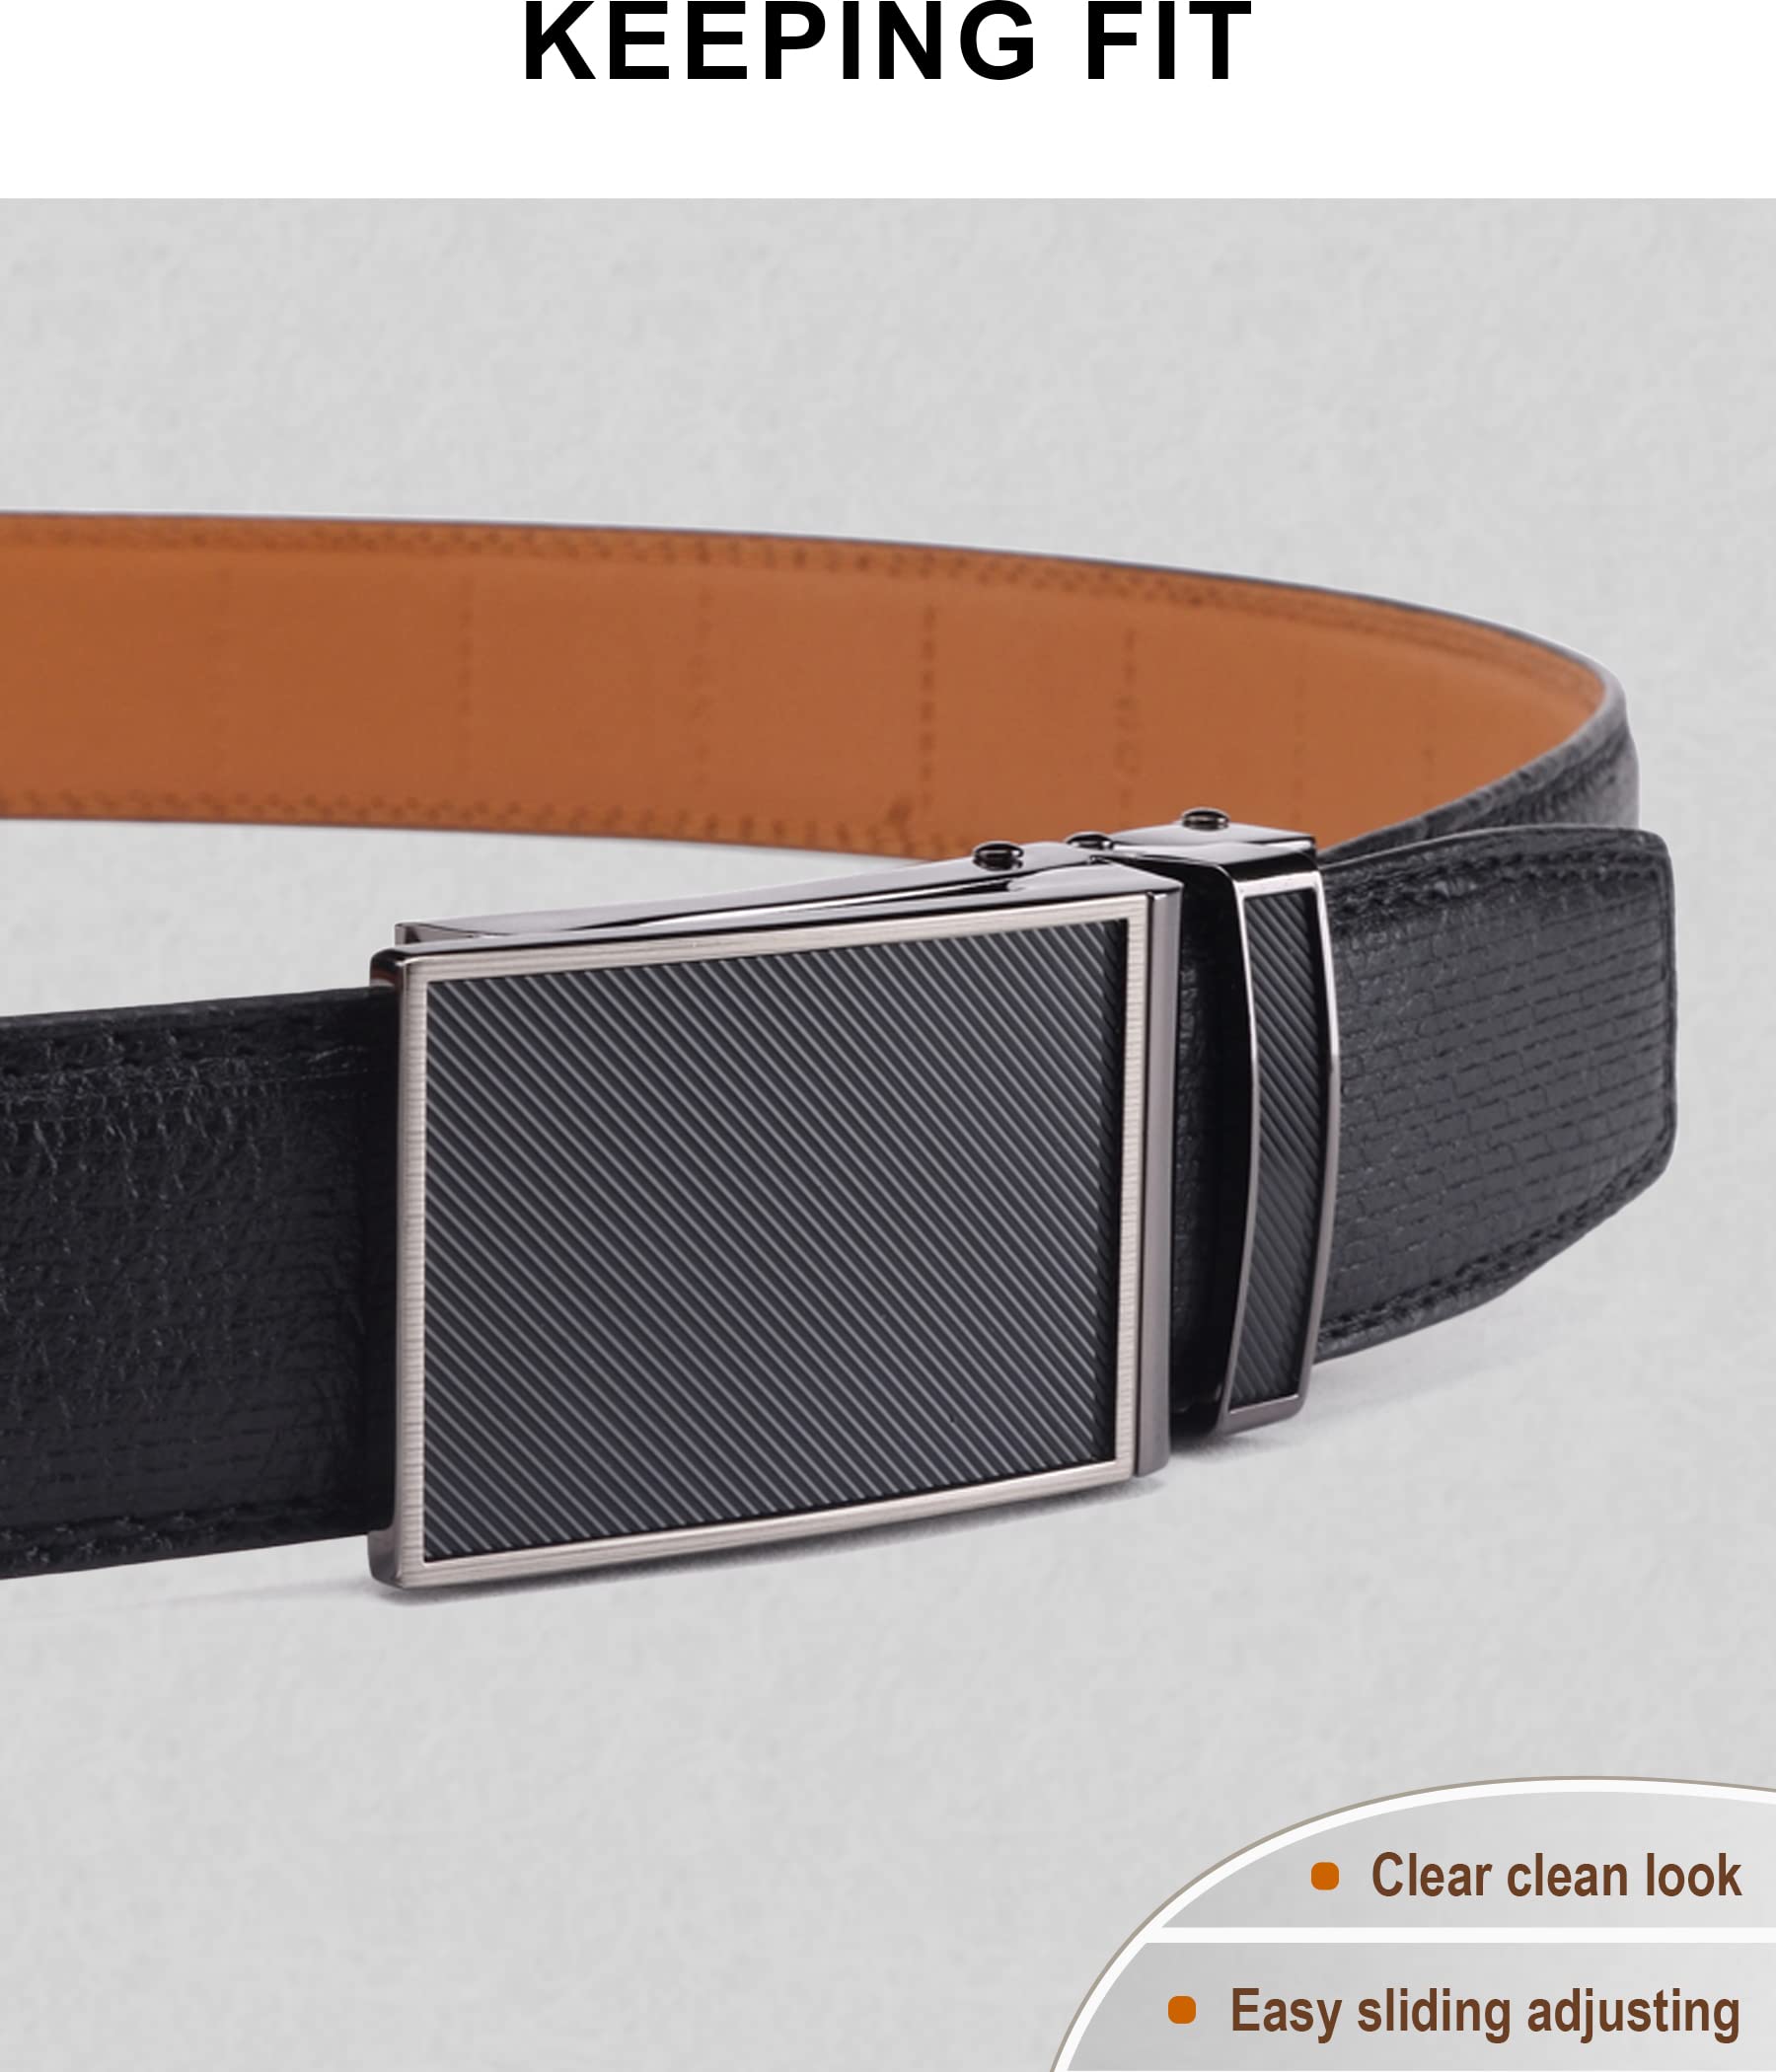 BULLIANT Men's Belt, Brand Ratchet Belt of Genuine Leather for Men Dress,Size Customized